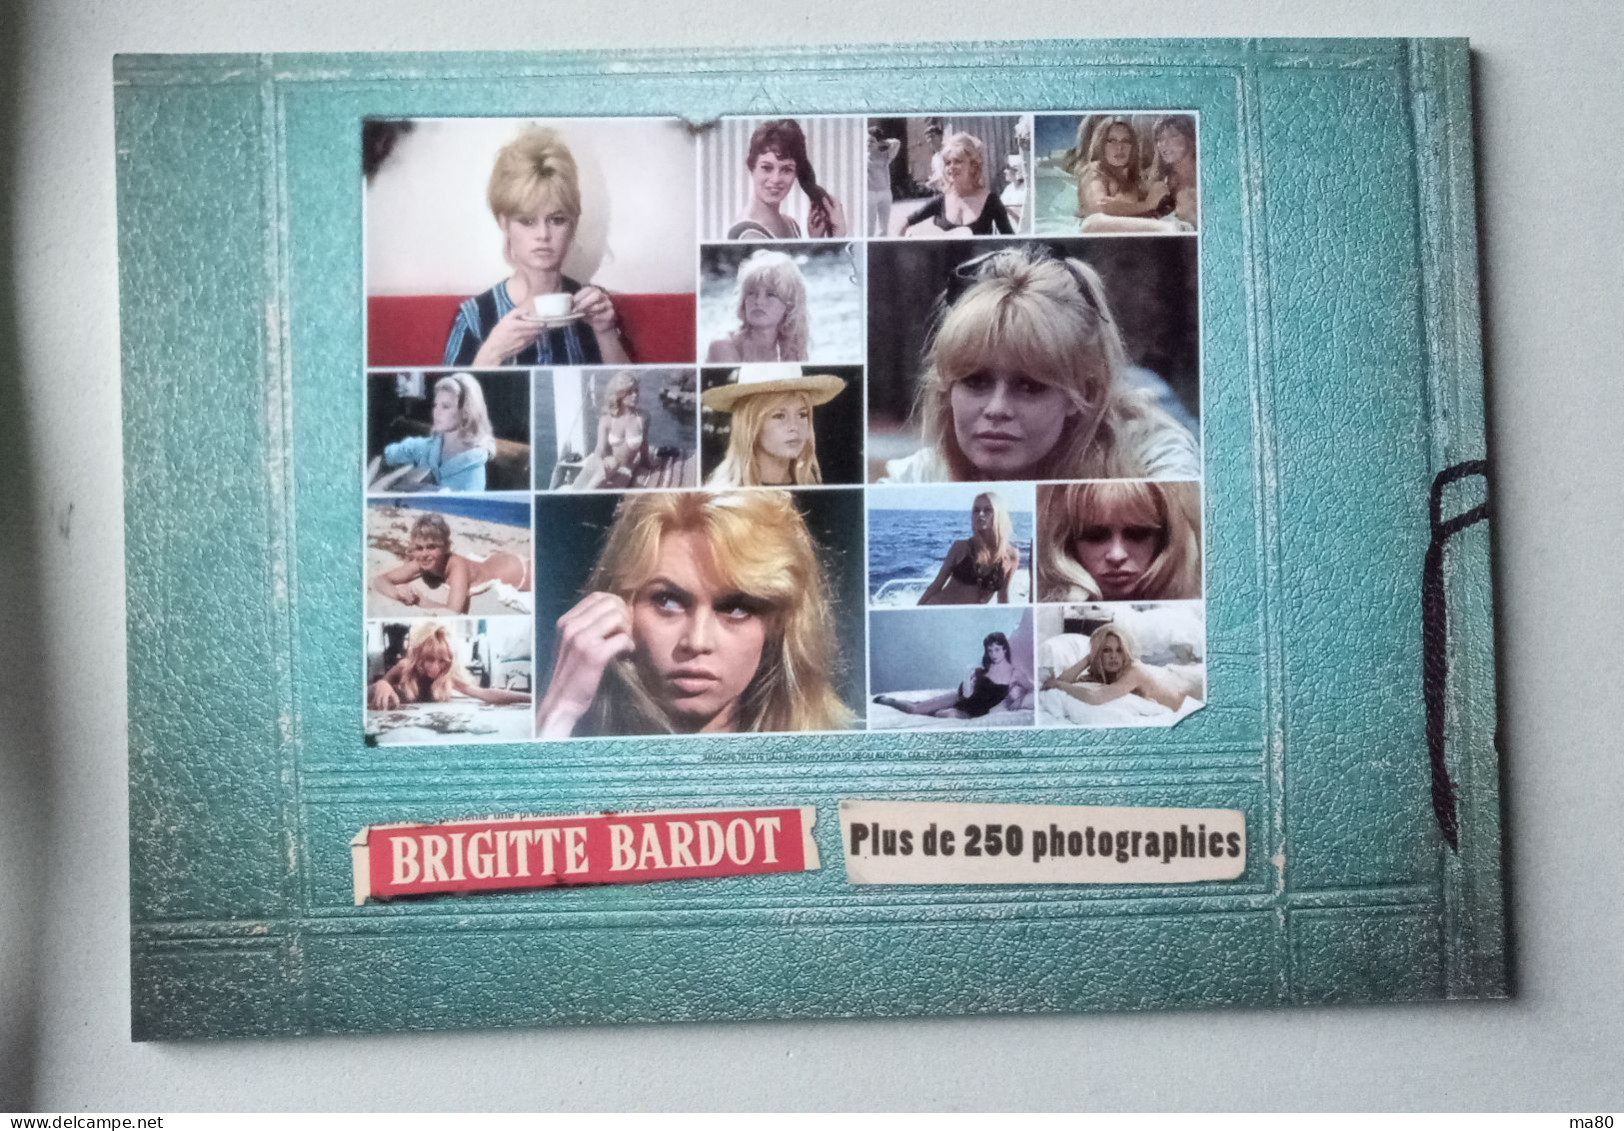 Brigitte Bardot Libro 40 Pag. 250 Foto Erotiche Sexy Anni 50 60 70 80 Circa, Cinema Film Vita Privata - Film Und Musik